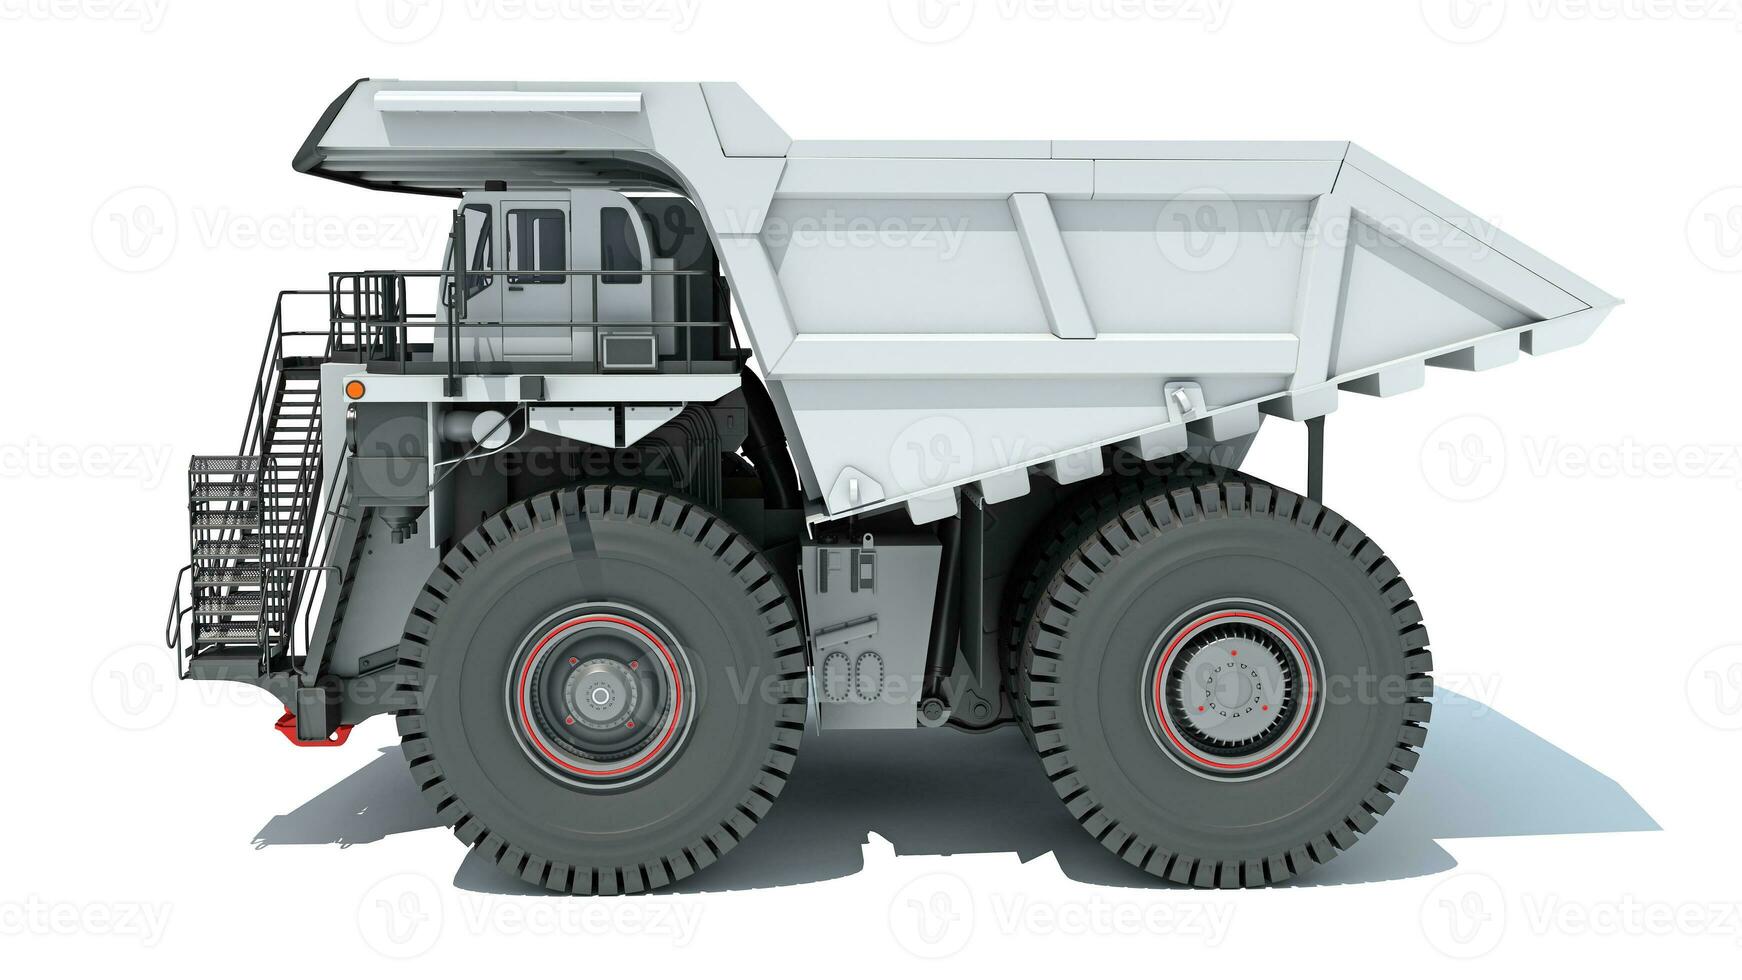 Bergbau Dump LKW schwer Konstruktion Maschinen 3d Rendern auf Weiß Hintergrund foto